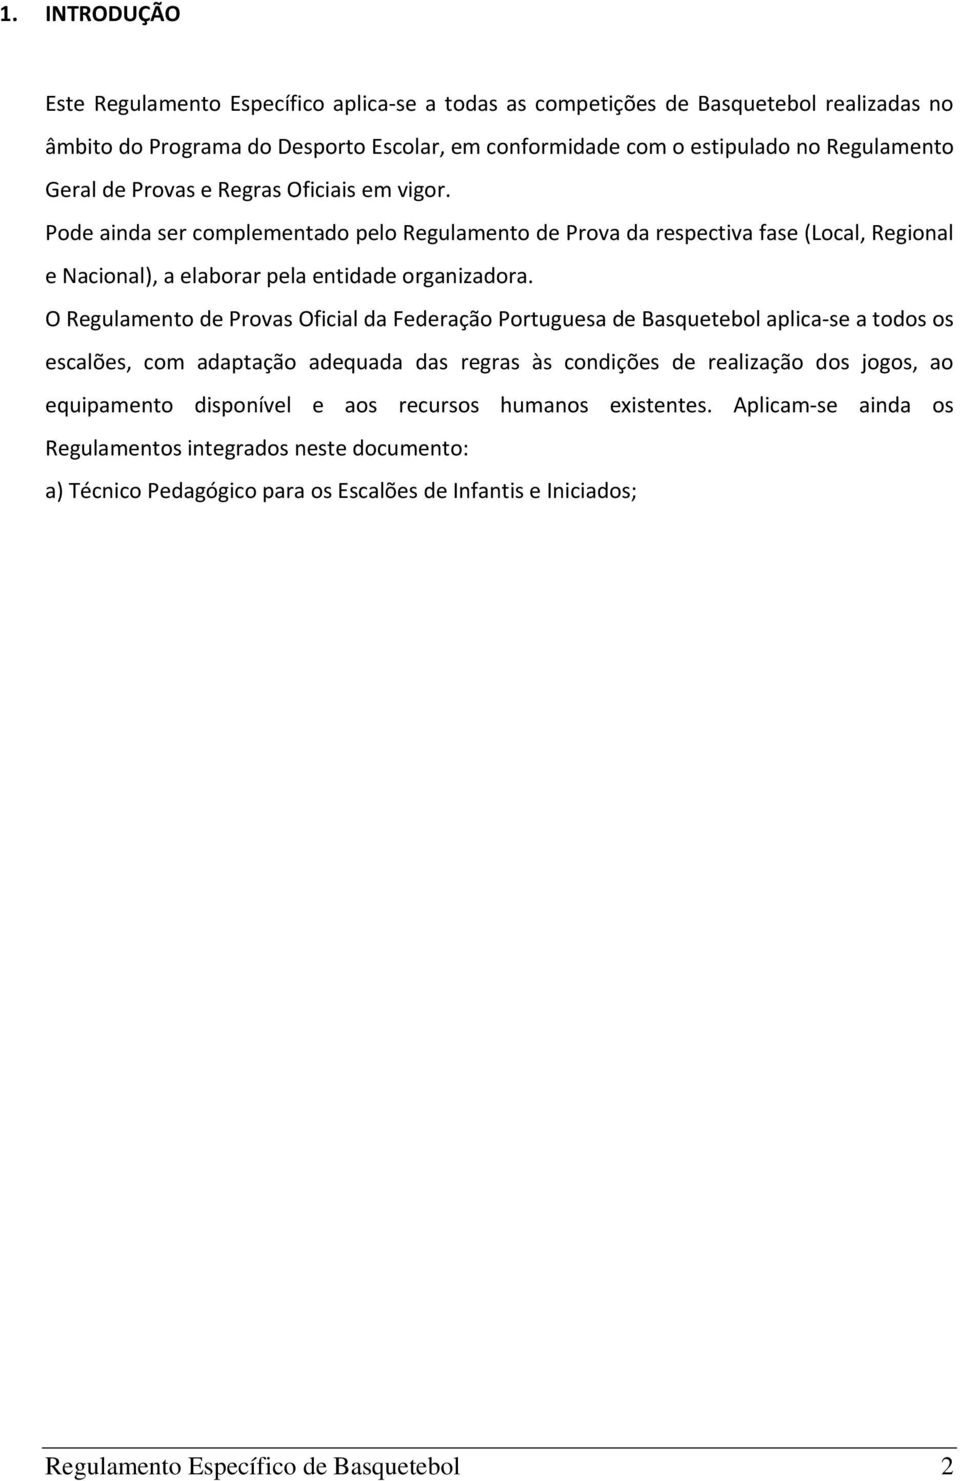 O Regulamento de Provas Oficial da Federação Portuguesa de Basquetebol aplica se a todos os escalões, com adaptação adequada das regras às condições de realização dos jogos, ao equipamento